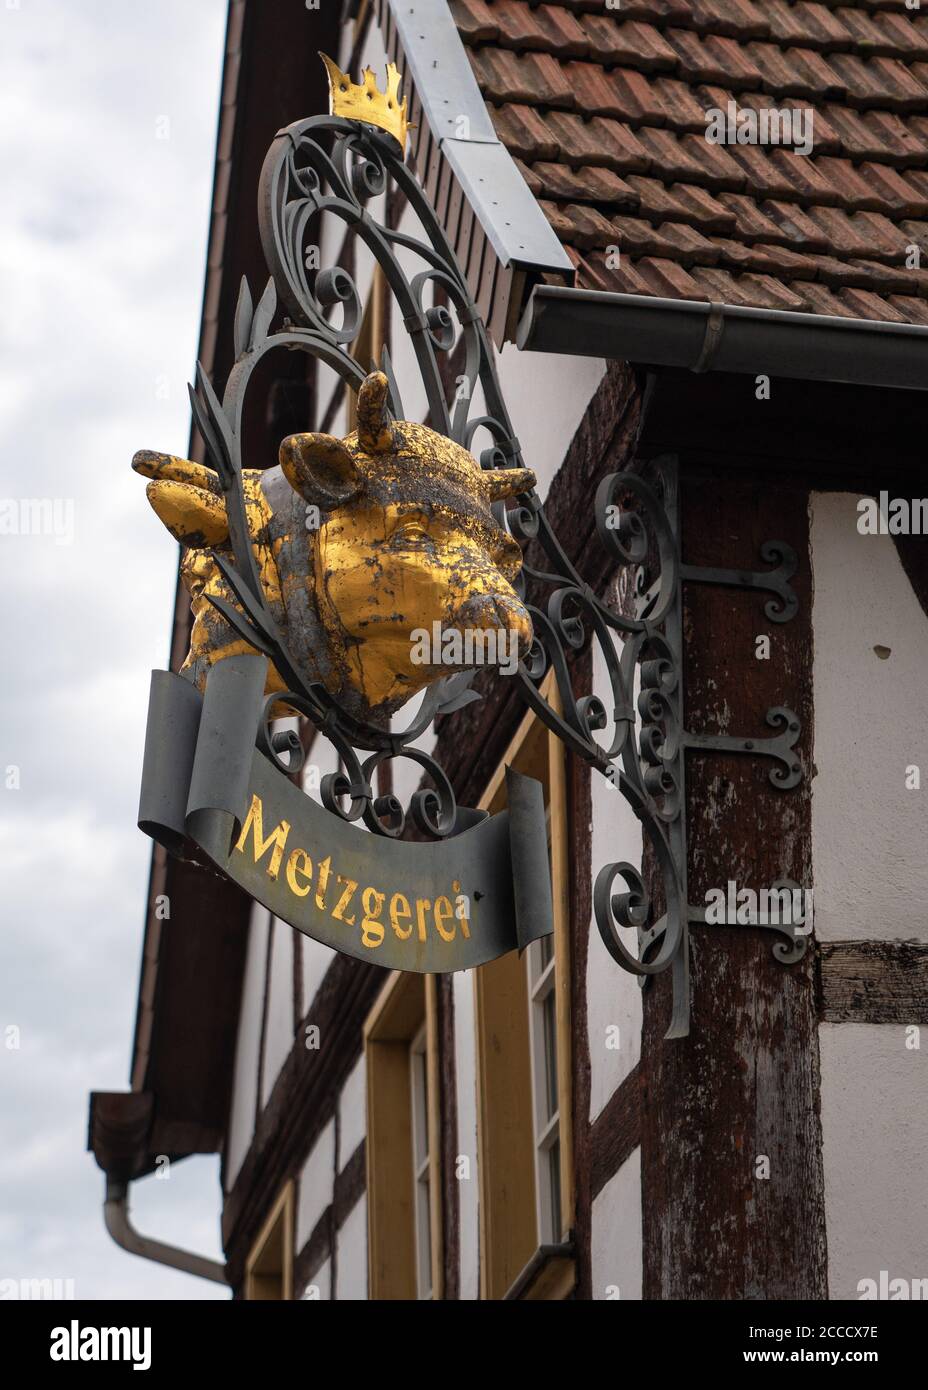 BAD SOBERNHEIM, ALLEMAGNE - 25 juin 2020 : image rapprochée d'un ancien bouclier de nez traditionnel avec l'inscription boucherie, Bad Sobernheim, Allemagne Banque D'Images